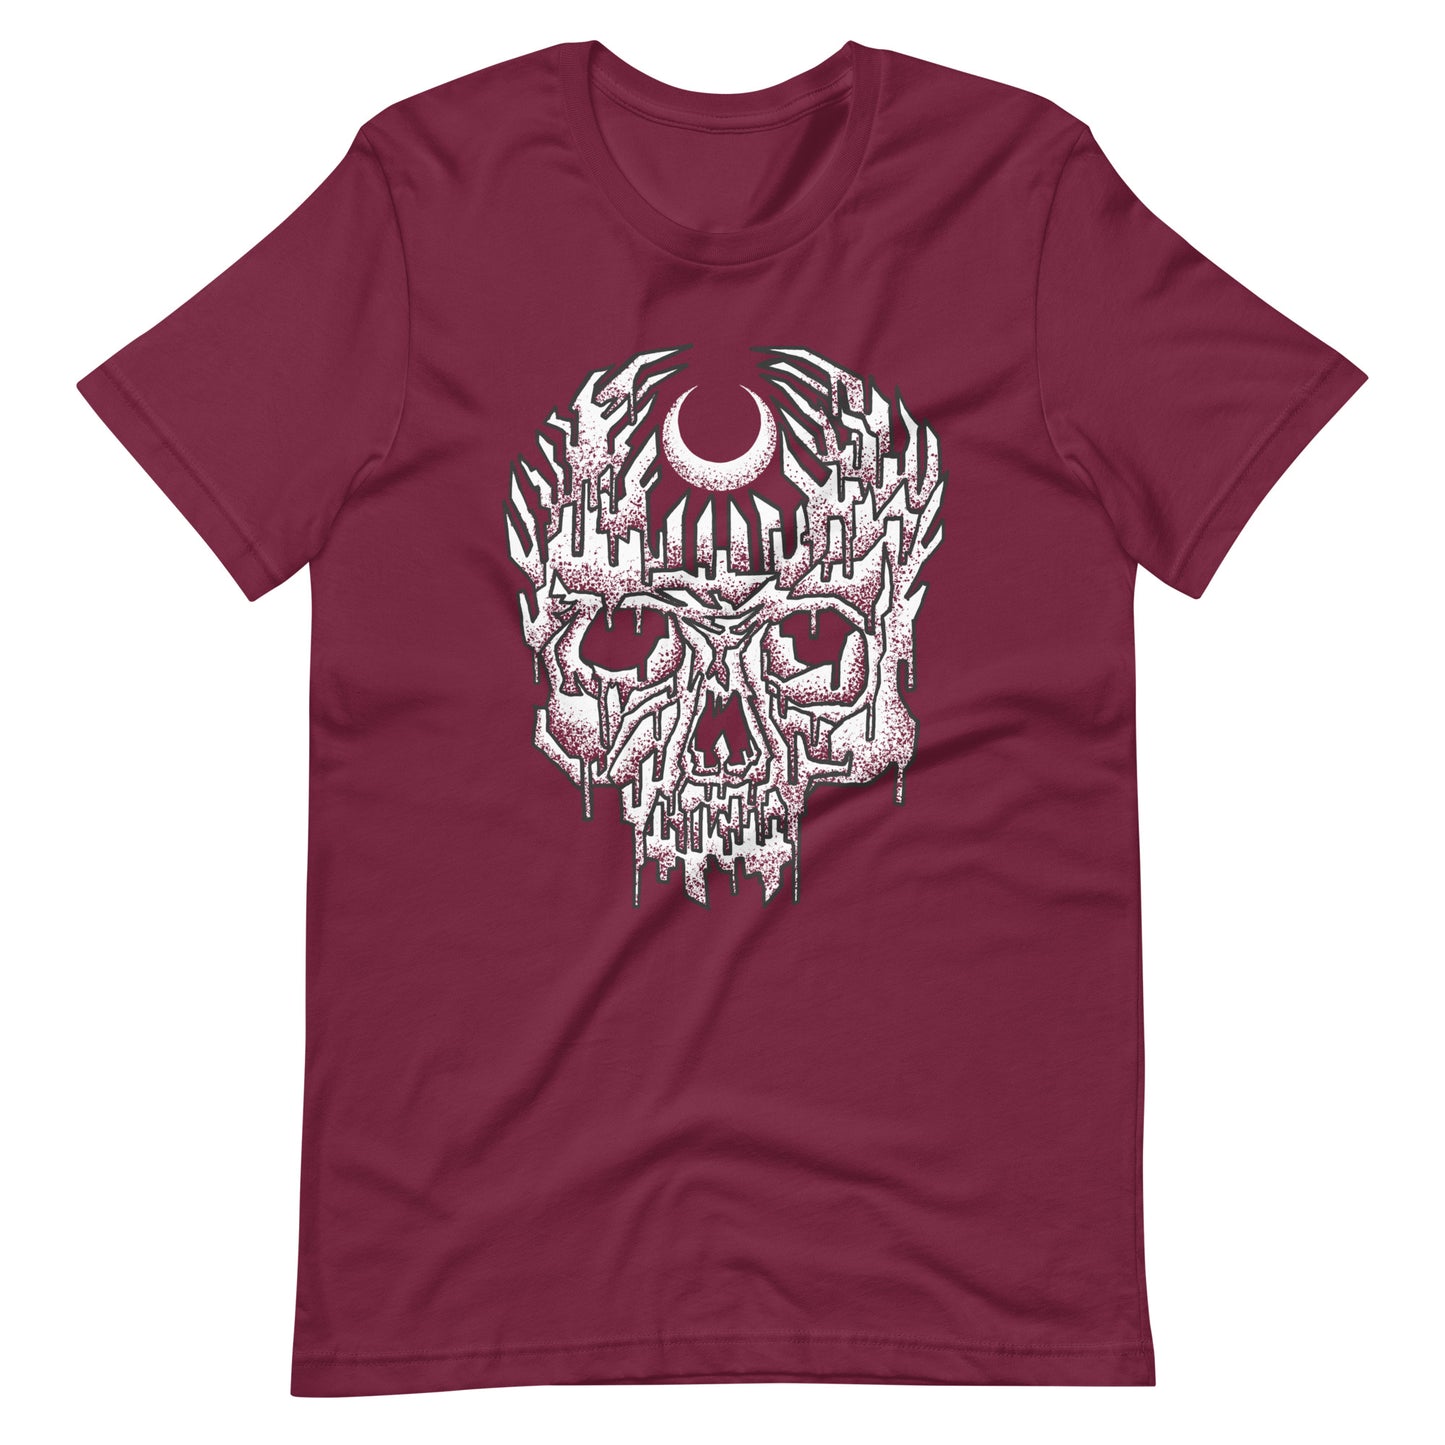 Dark of the Moon - Men's t-shirt - Maroon Front